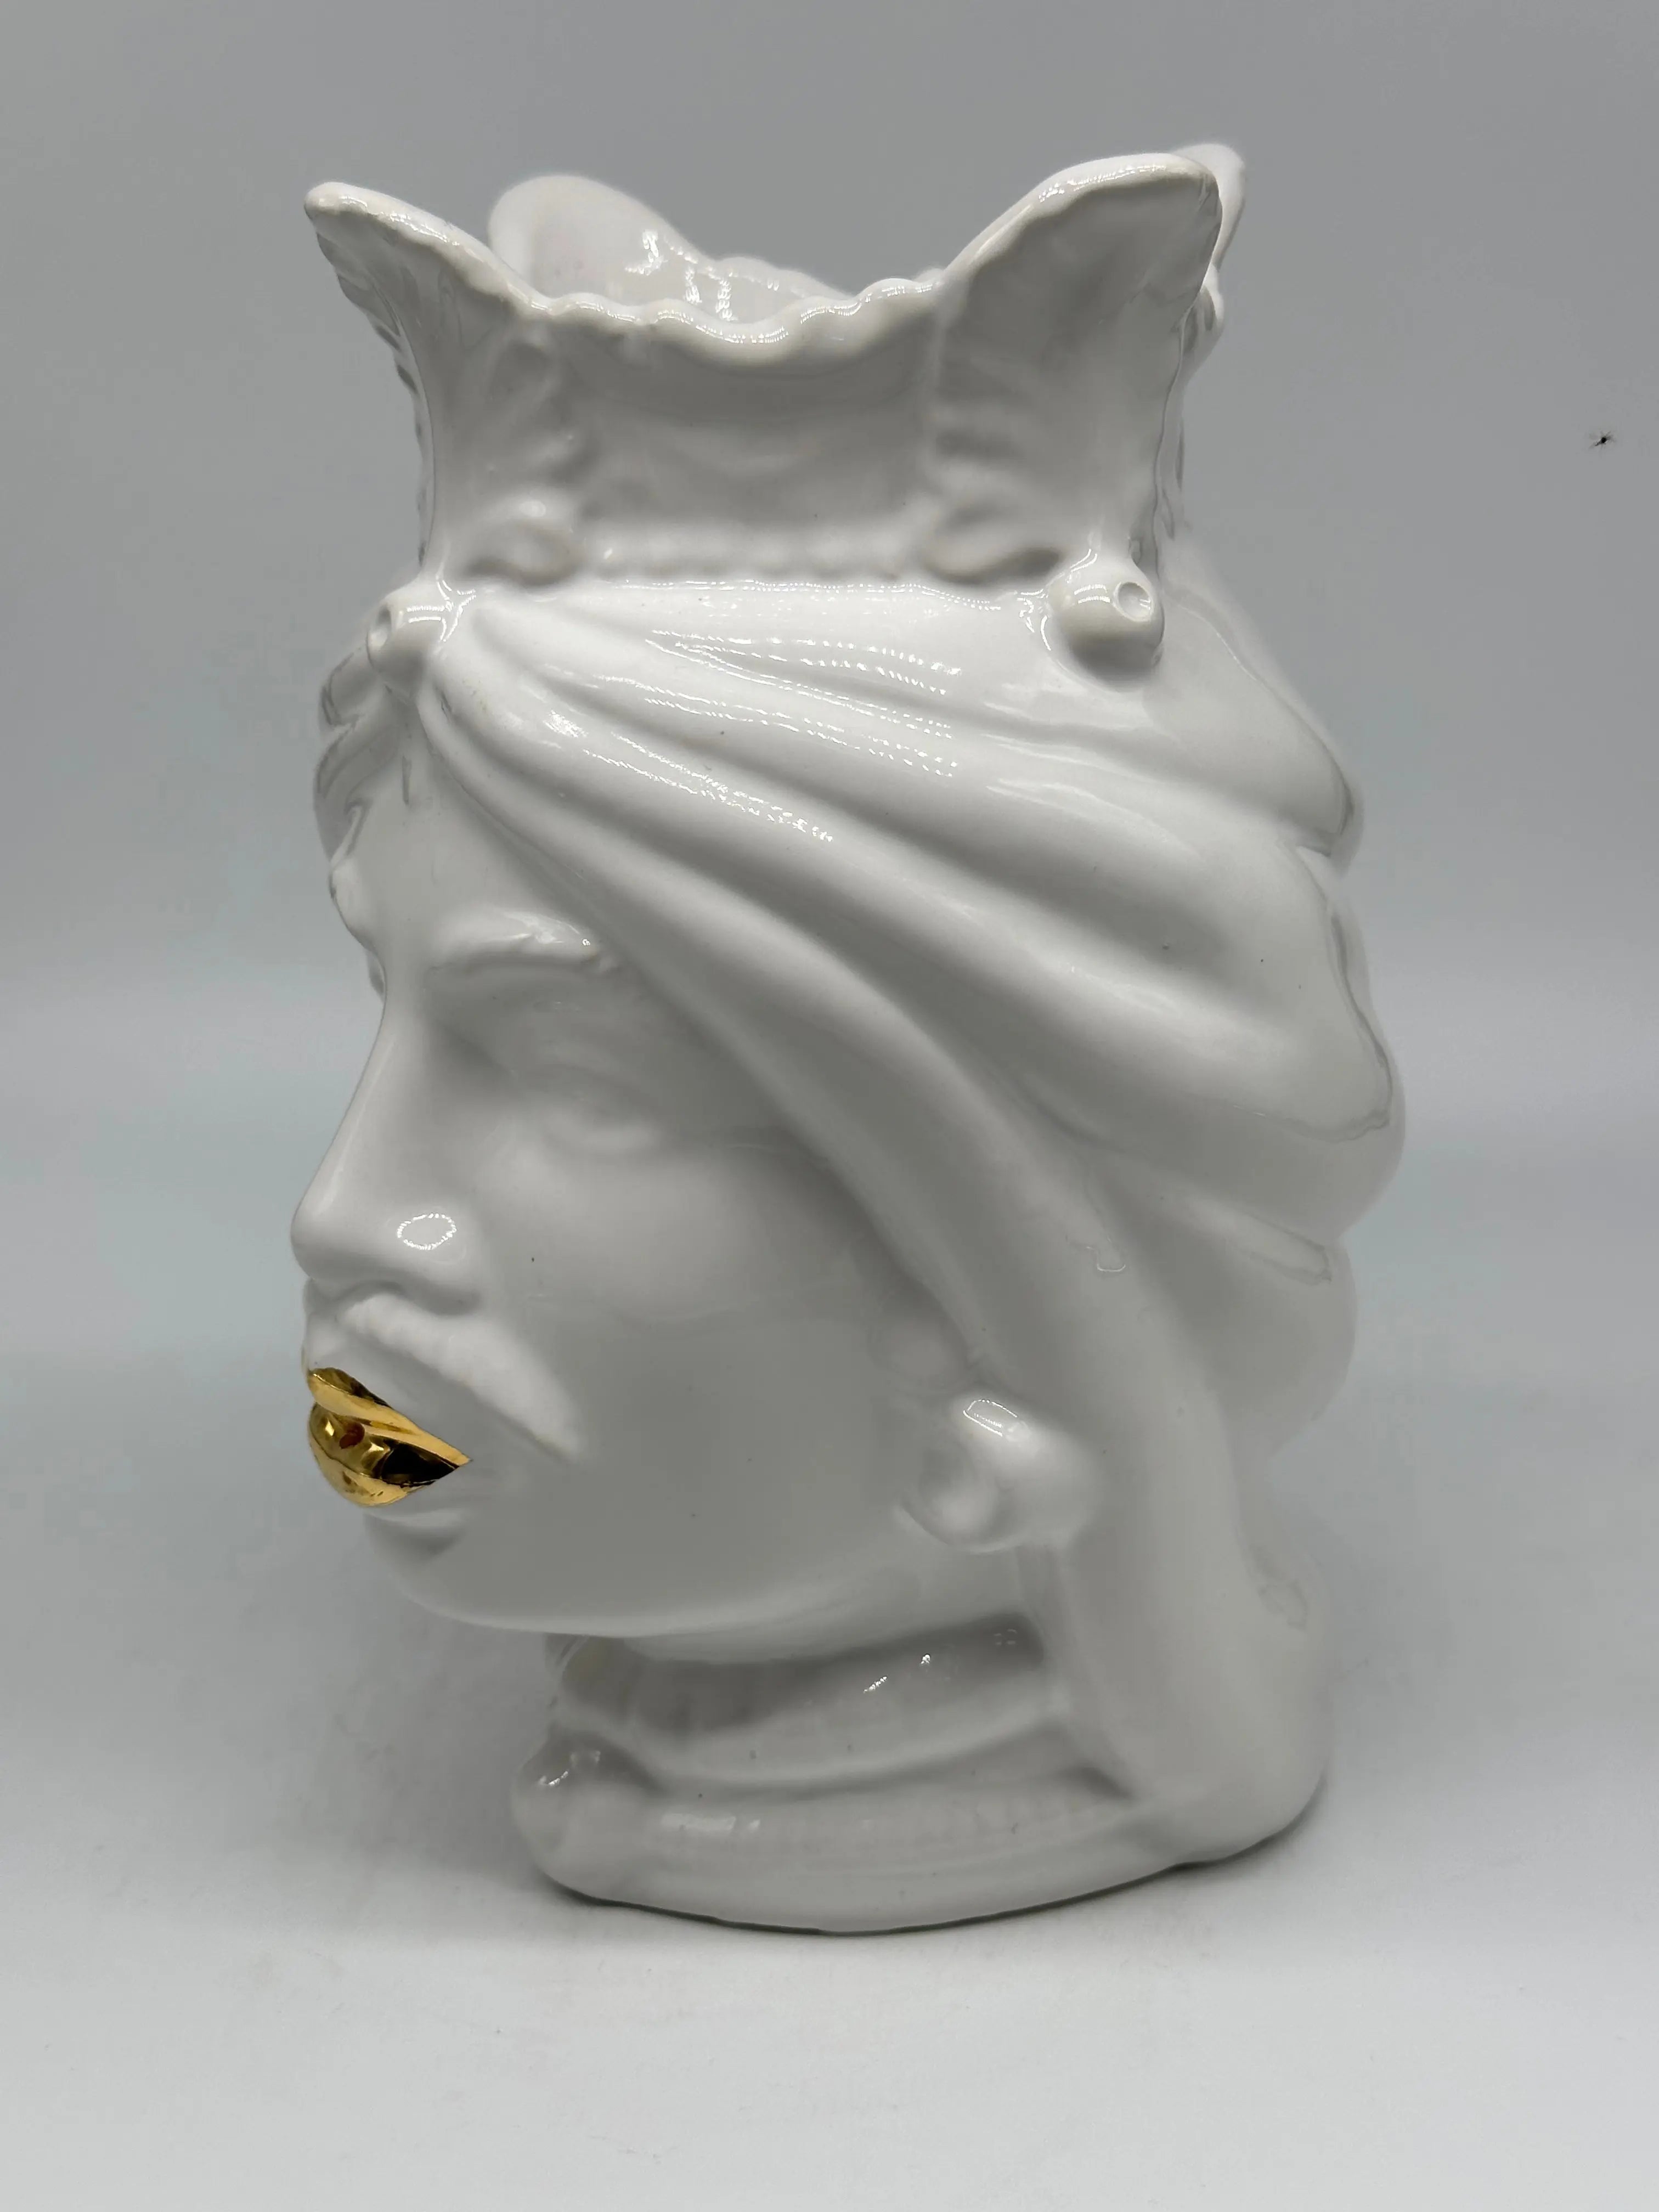 FINE SERIE - Testa di Moro Afro Uomo Ceramica Caltagirone cm H.25 L.17 Artigianale Bianco dettagli Oro DD CERAMICHE SICILIANE